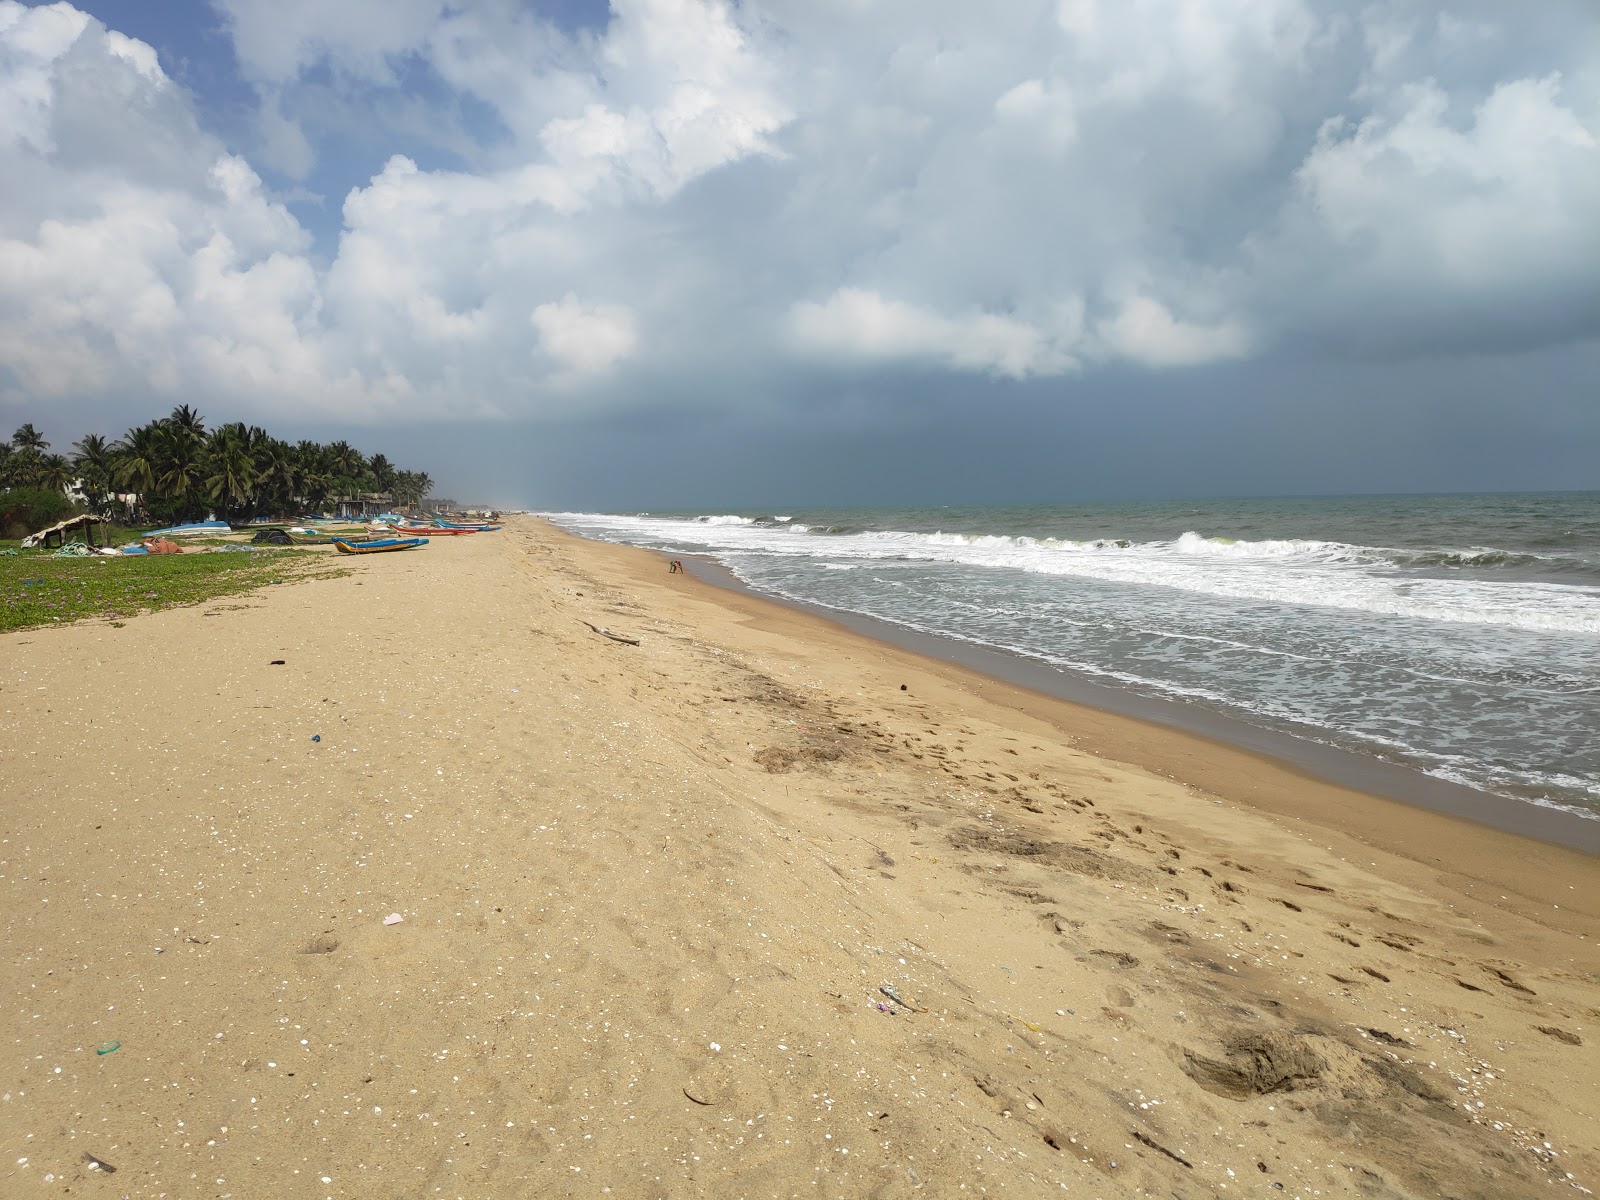 Zdjęcie Pondicherry University Beach z powierzchnią jasny piasek